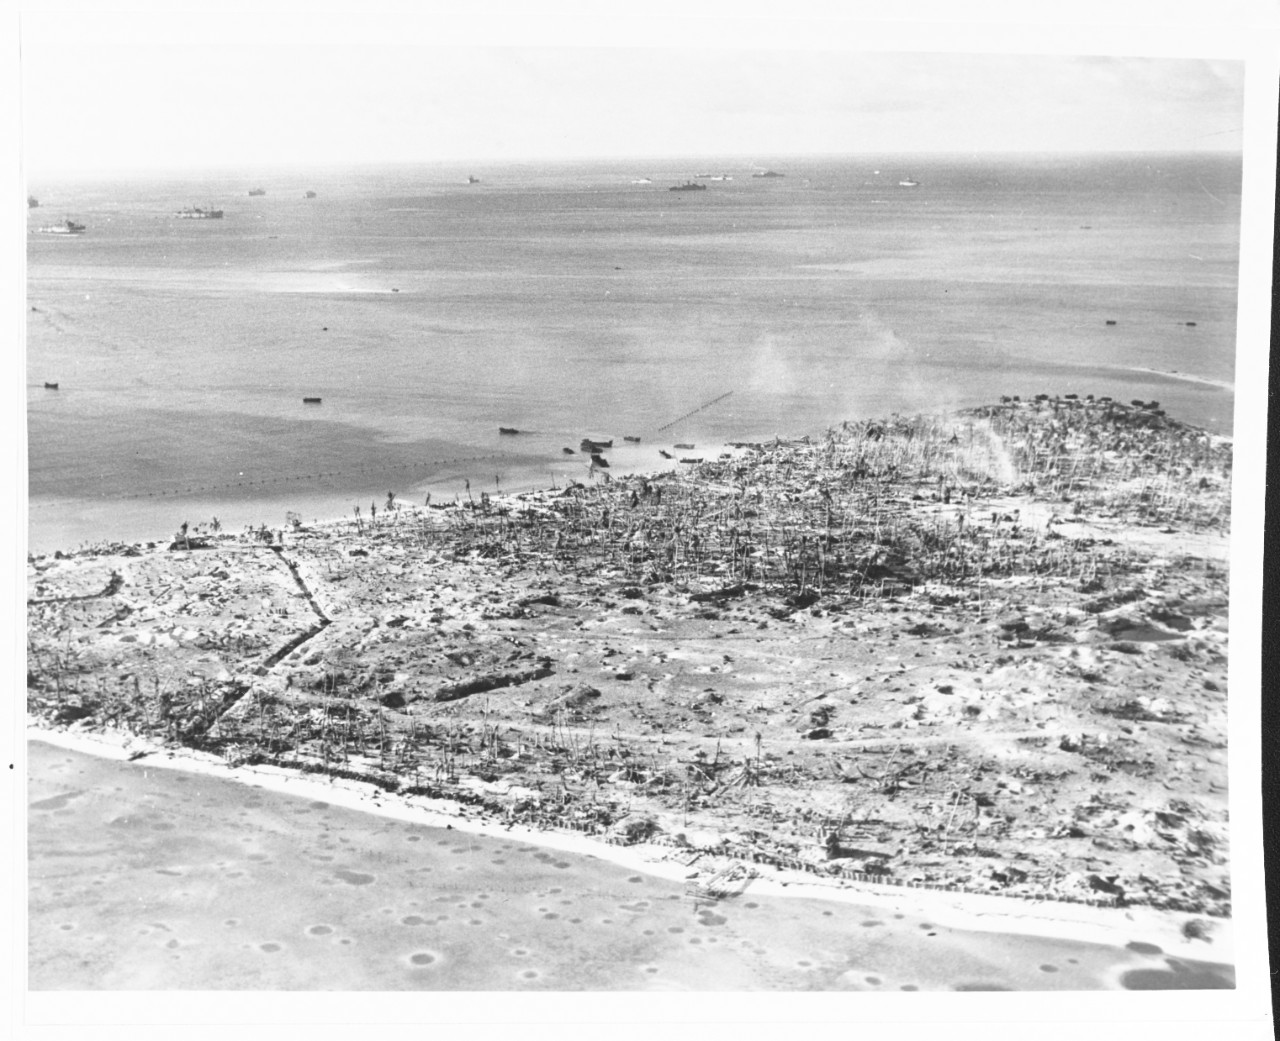 Tarawa Operation, November 1943